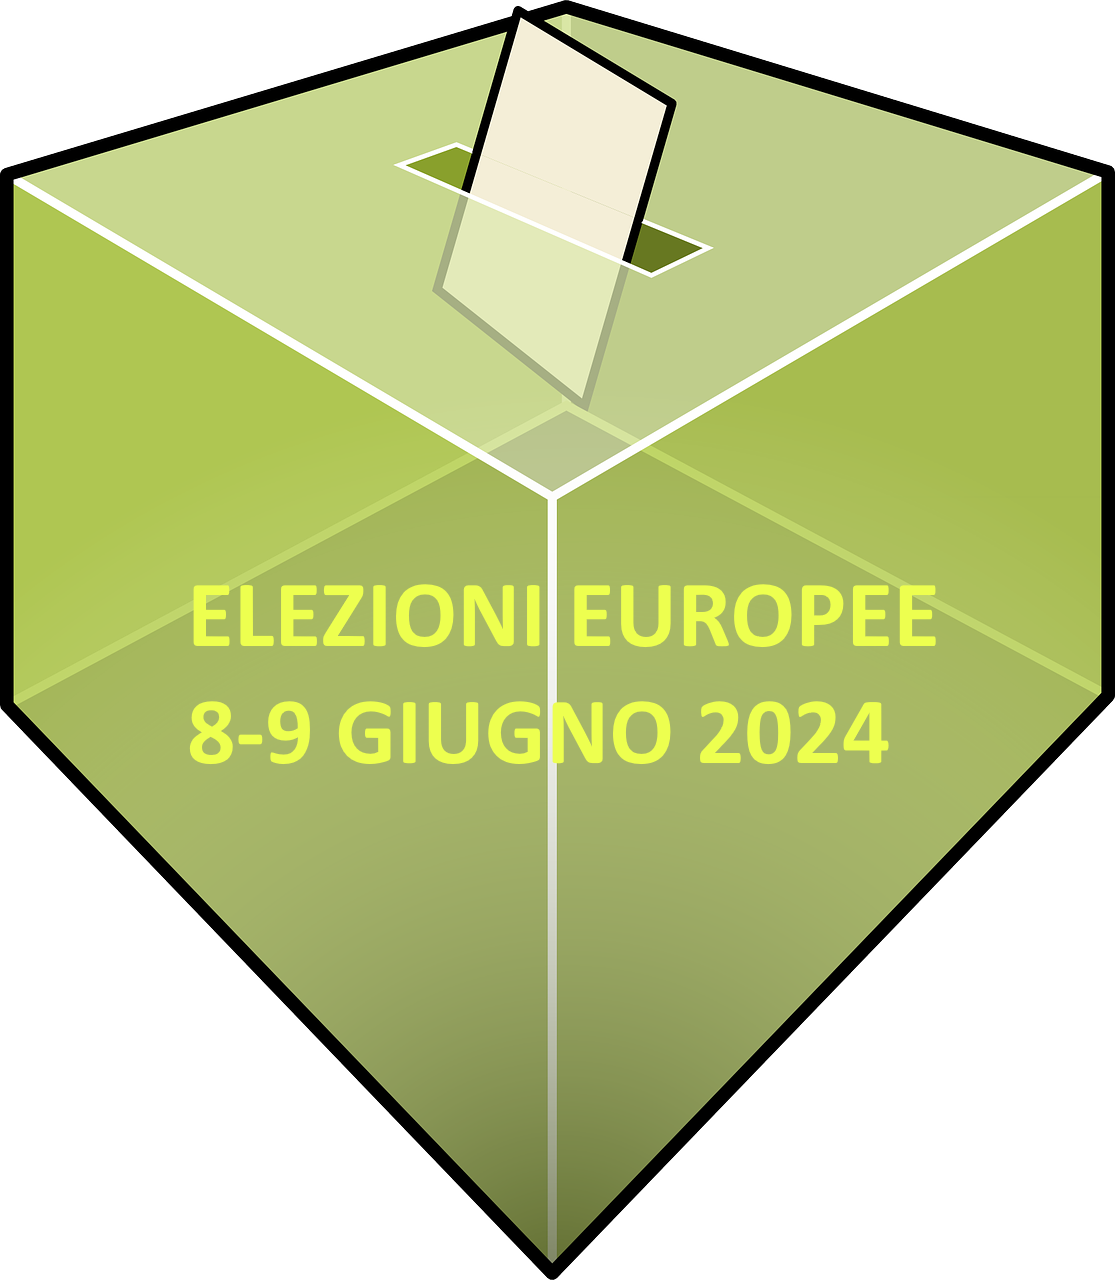 Elezioni Europee 2024 - Orari apertura uffici